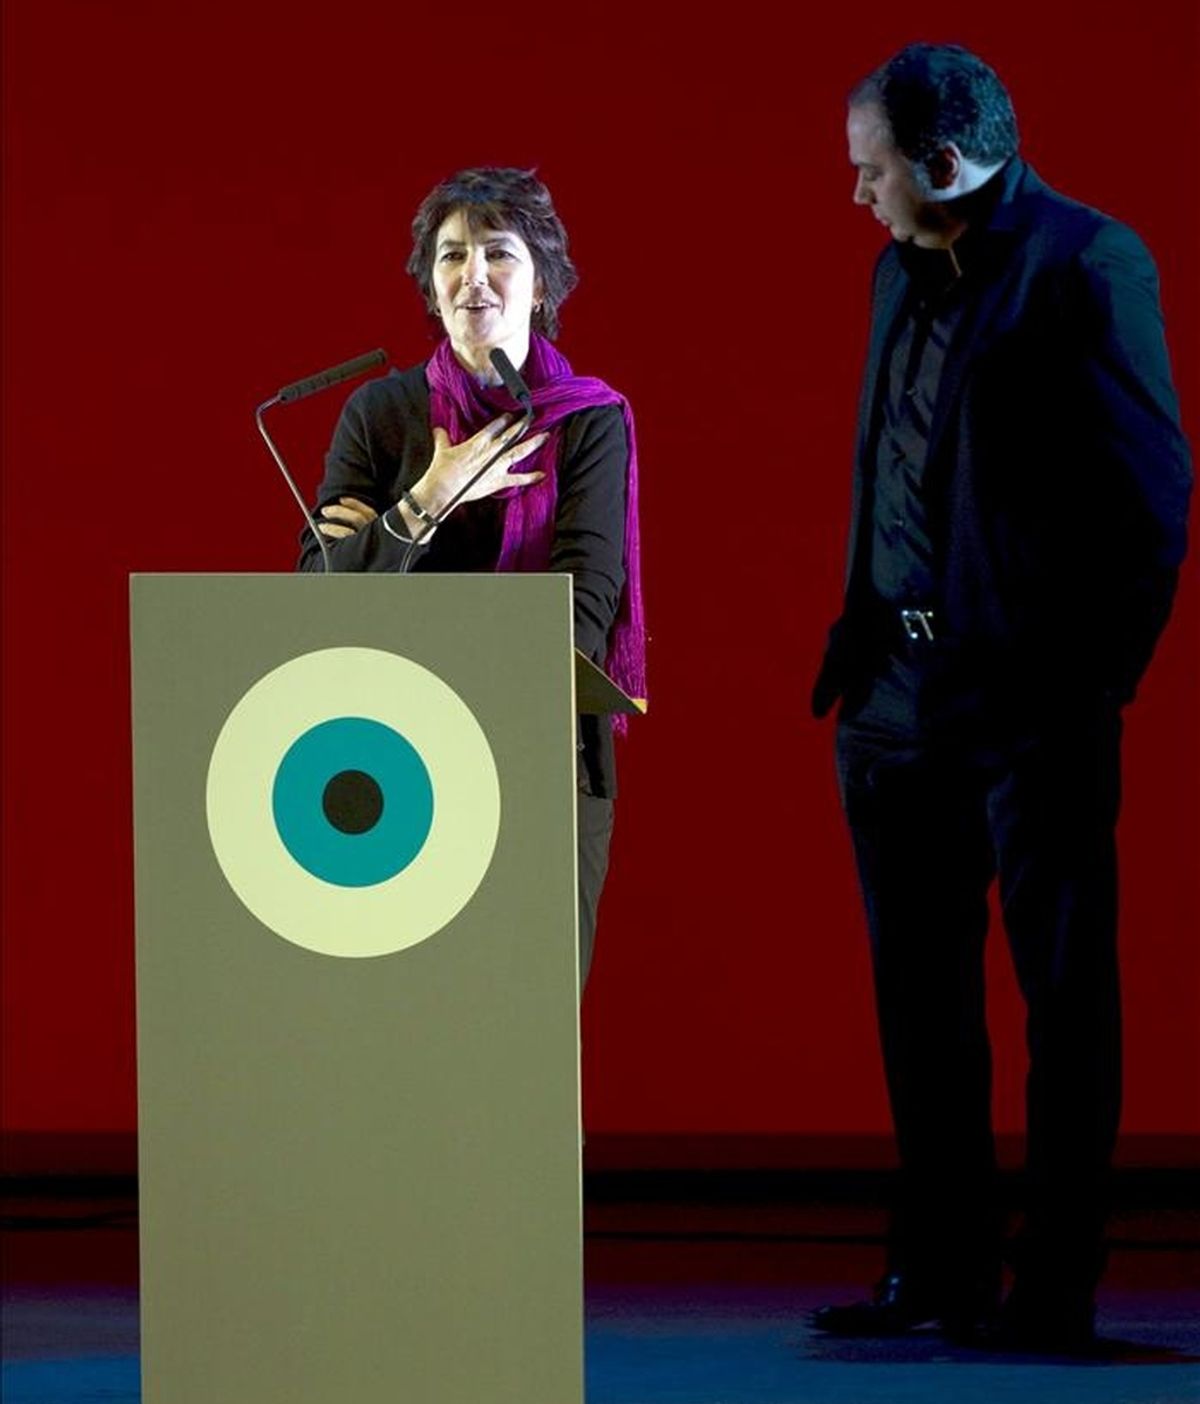 La directora británica Kim Longinotto pronuncia unas palabras durante la gala de inauguración del Festival Internacional de Cine de Gijón, en su edición del año pasado. EFE/Archivo